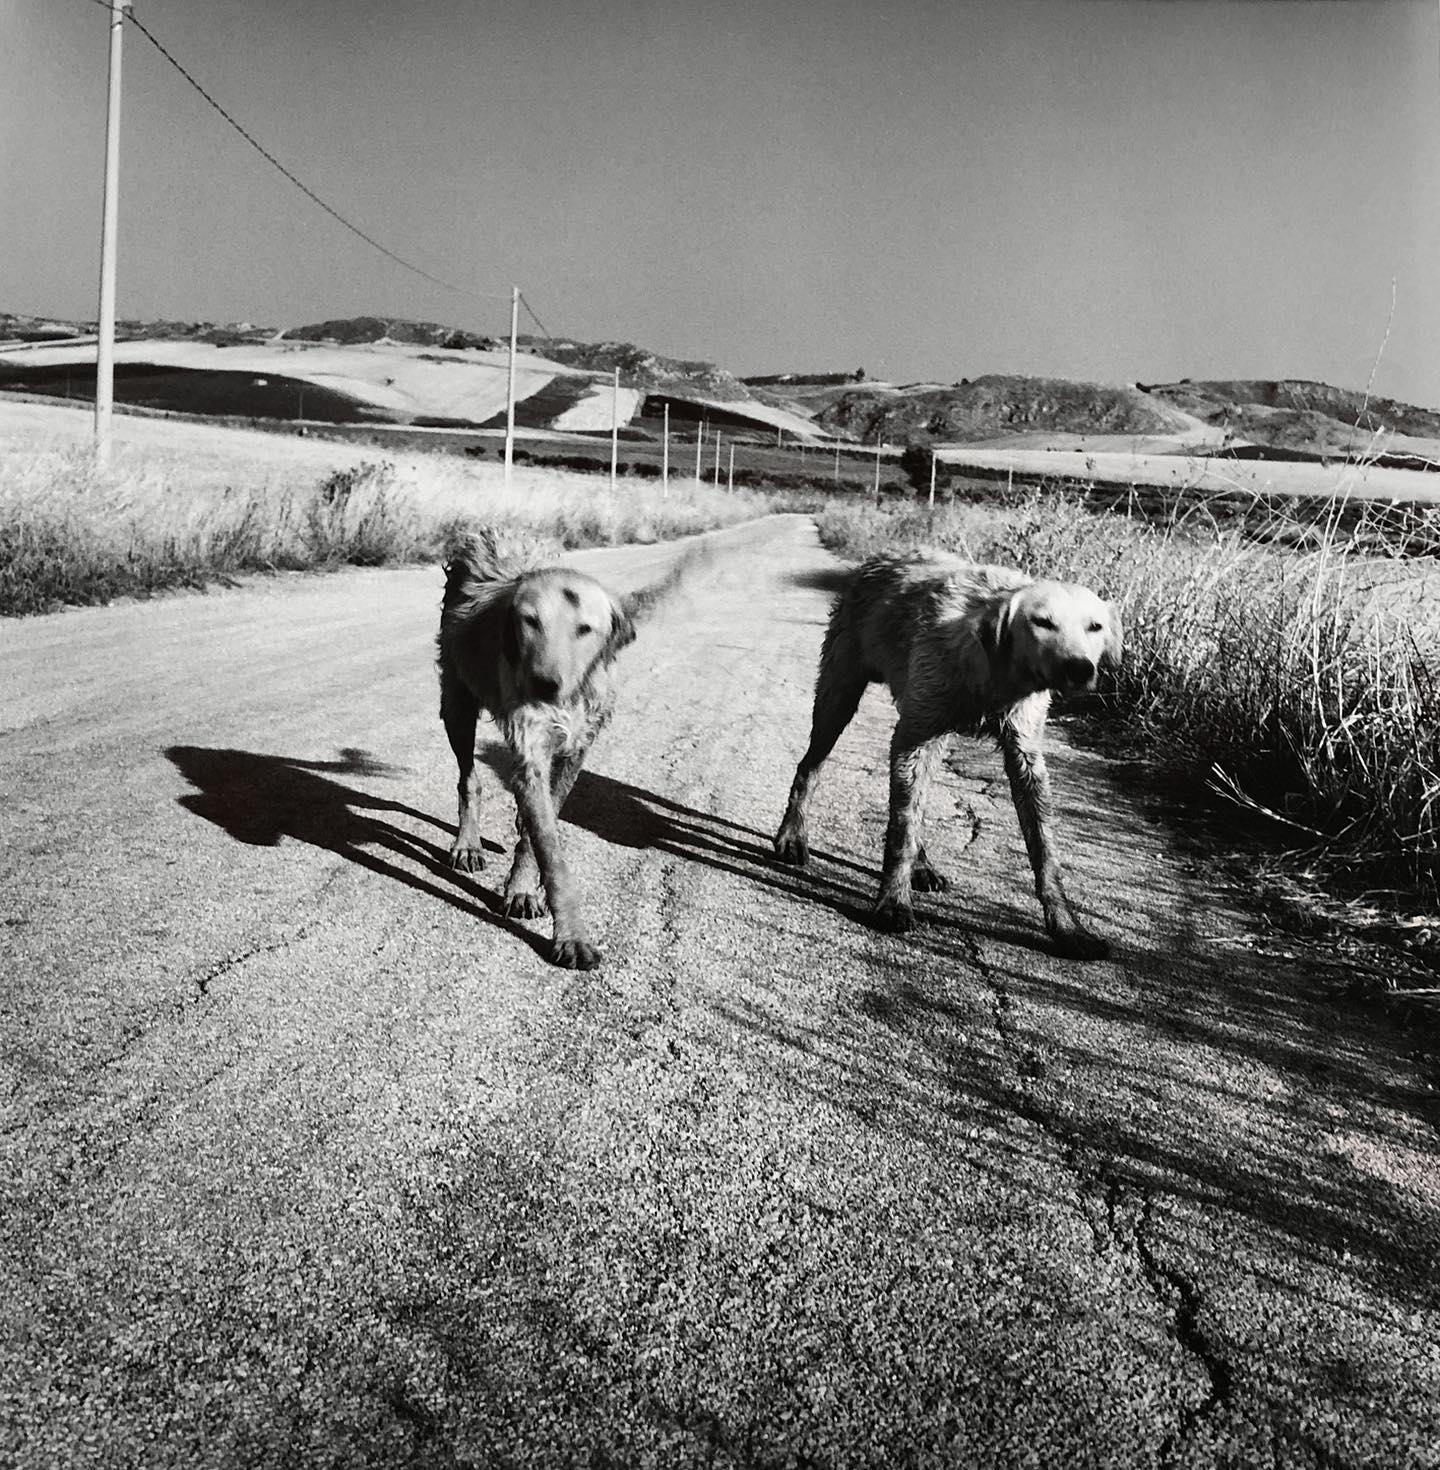 Incrociandomi con due cani in una strada di campagna nei pressi di Castelvetrano. Trapani, 2003